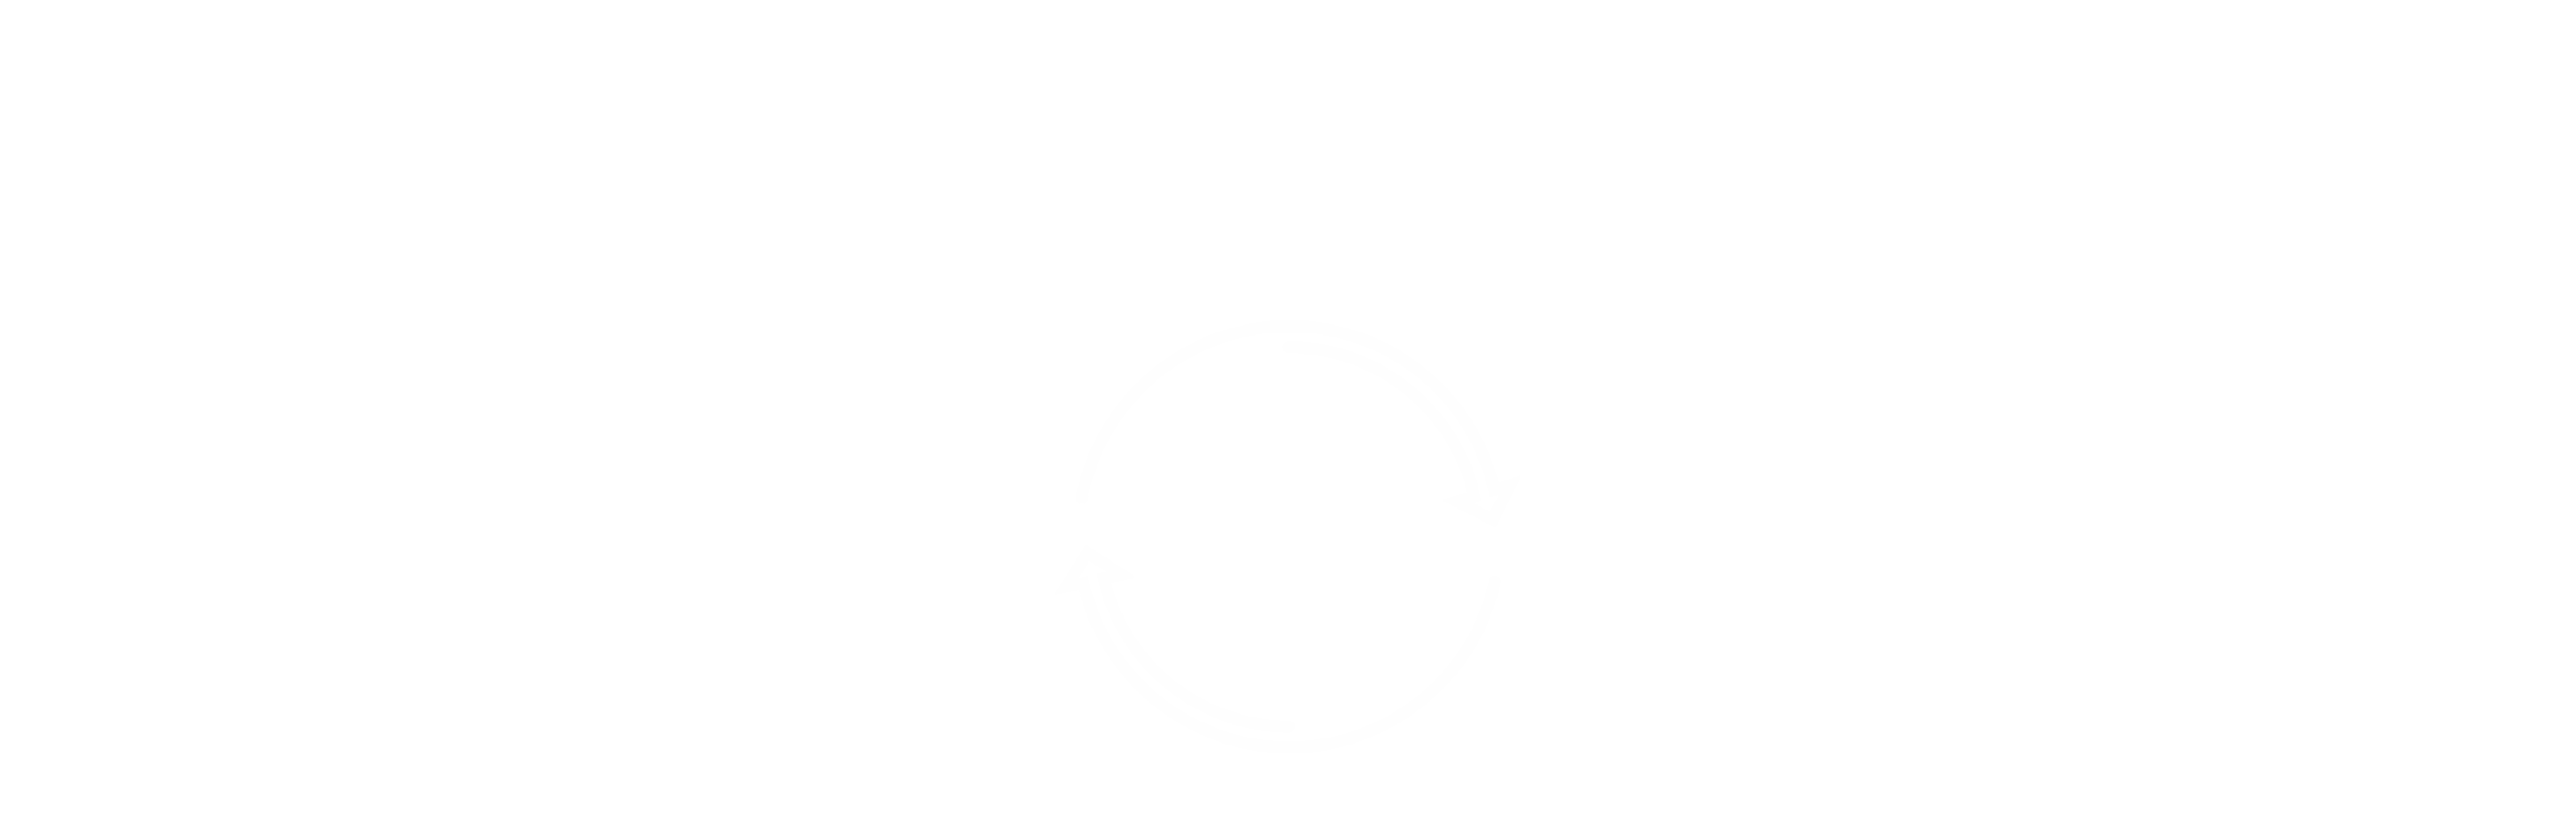 Dispute Settlement